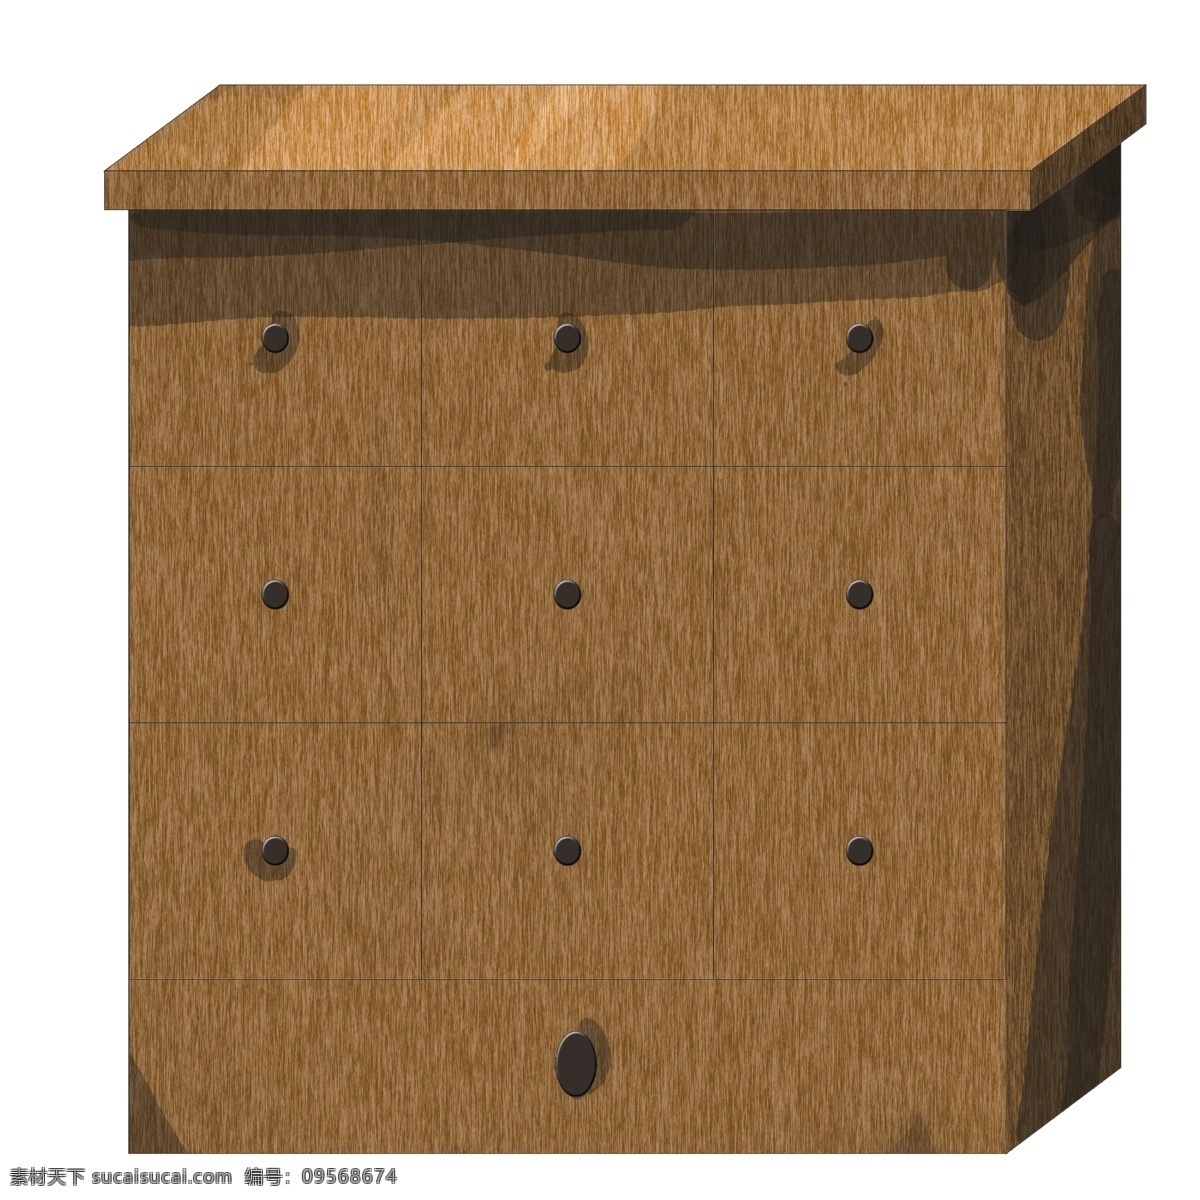 实木 精美 家具 插画 棕色的家具 卡通插画 家具插画 精美家具 家装家具 室内家具 实用的家具